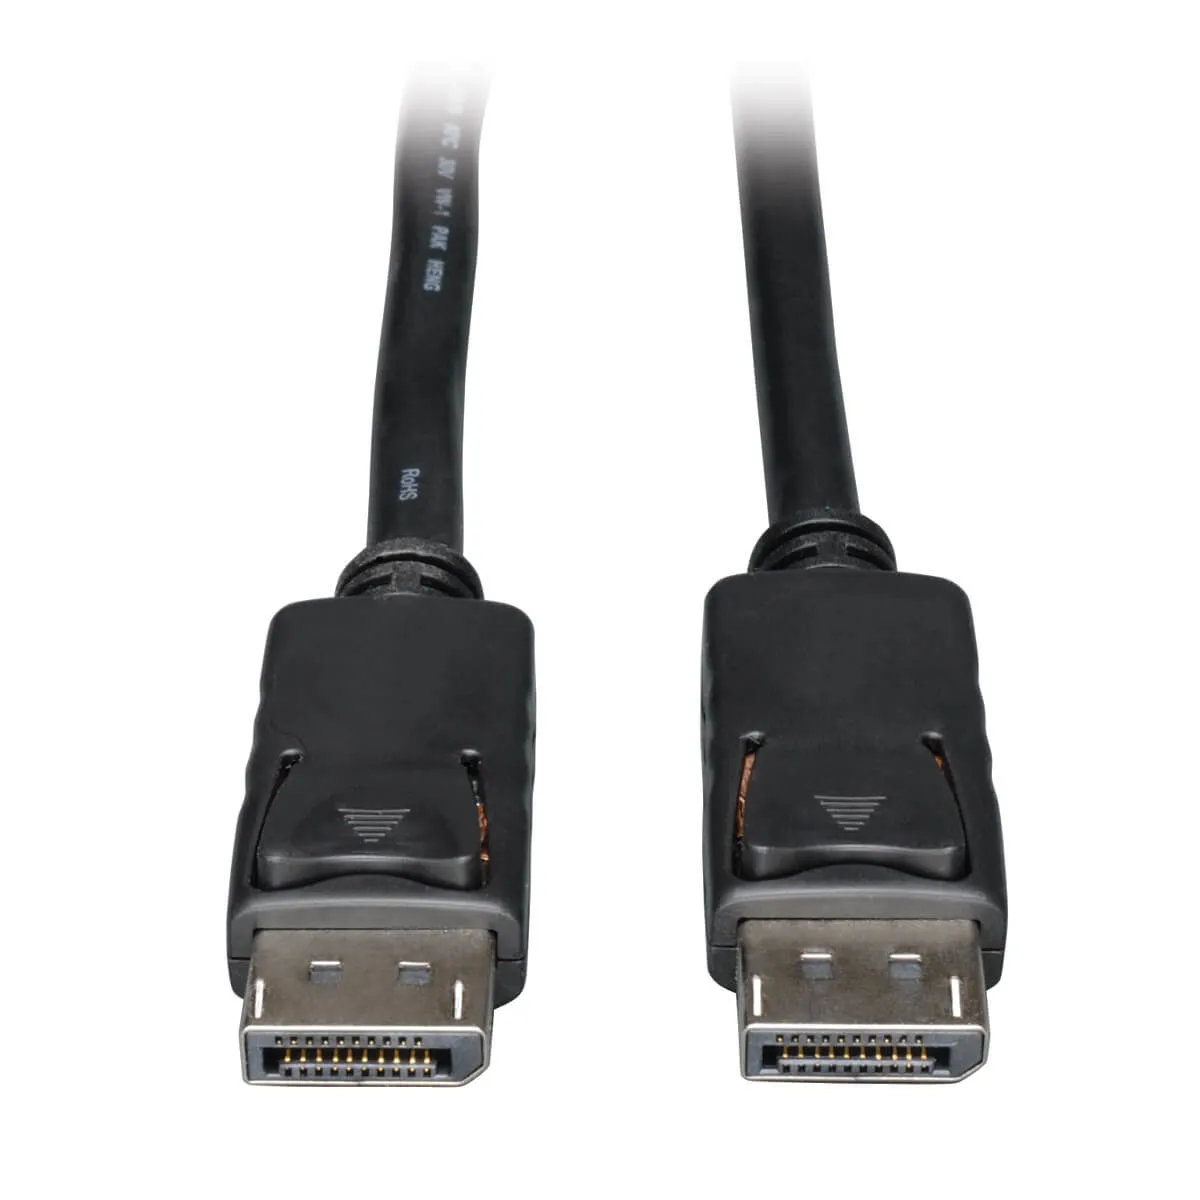 Vente EATON TRIPPLITE DisplayPort Cable with Latches 4K 60Hz Tripp Lite au meilleur prix - visuel 2